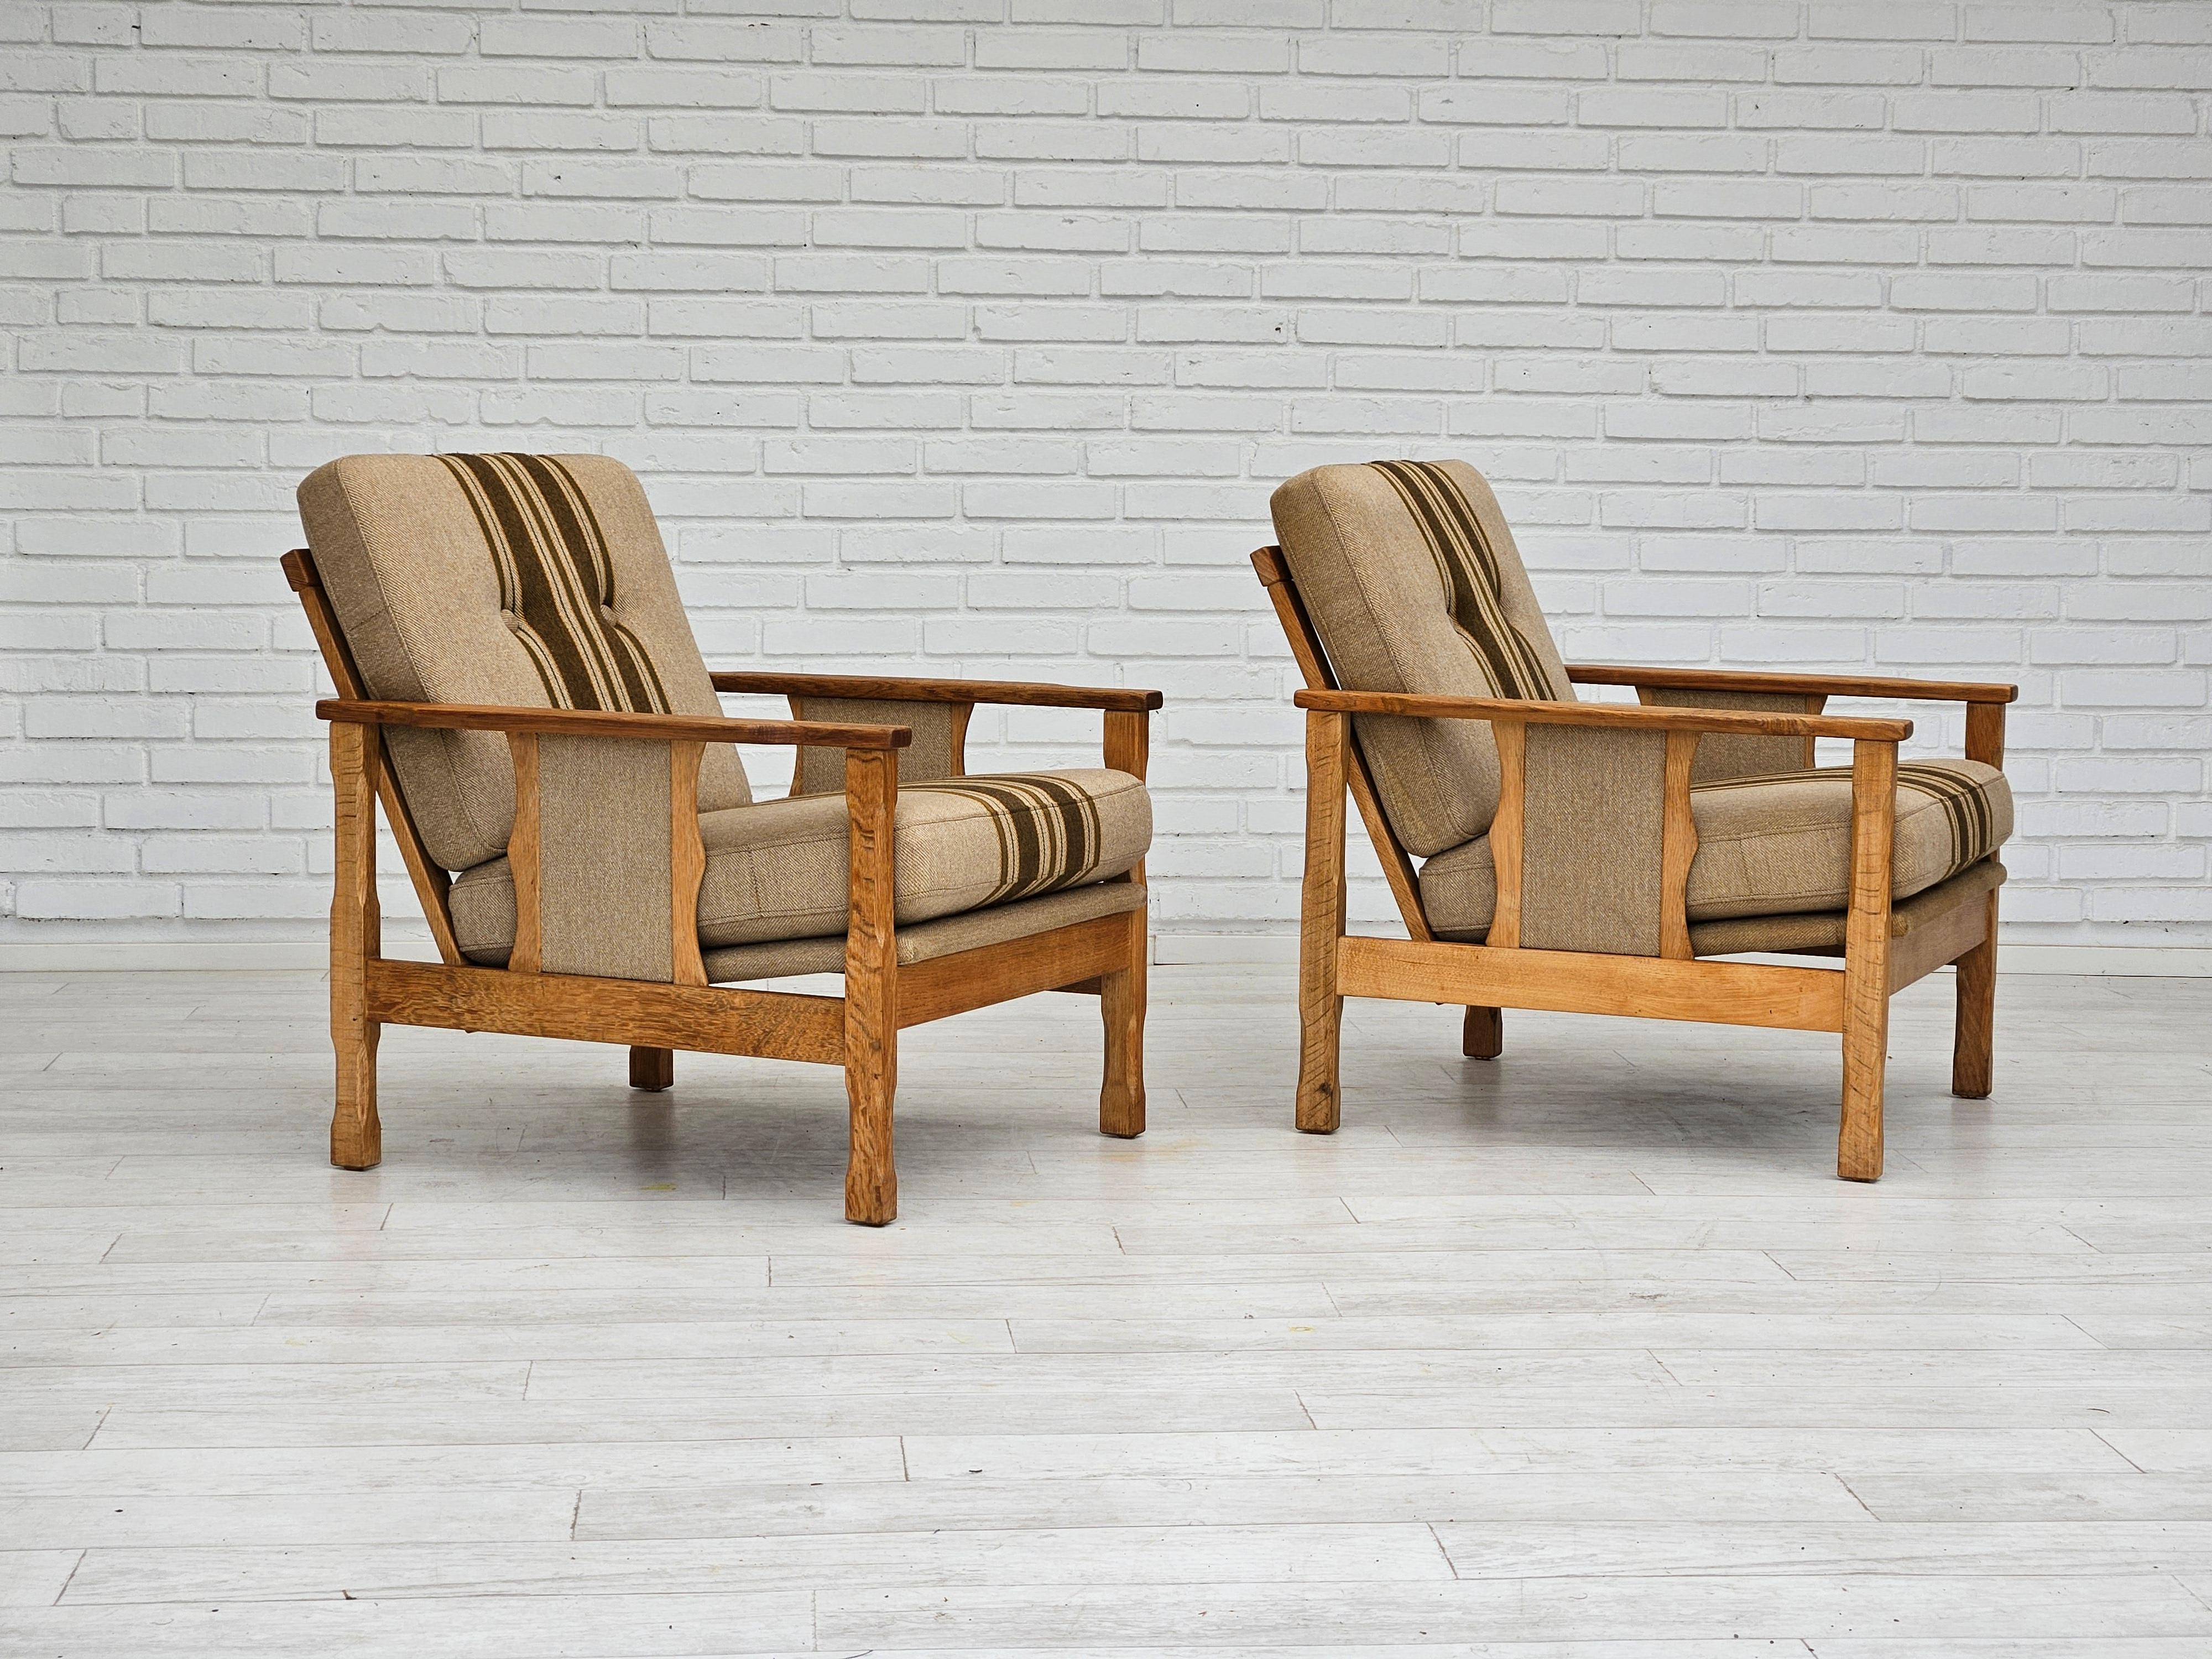 1970, paire de chaises longues danoises en très bon état d'origine : pas d'odeurs ni de taches. Meuble en tissu de laine, bois de chêne. Coussins amovibles. Fabriqué par un fabricant de meubles danois dans les années 1970. ( prix pour un ensemble de